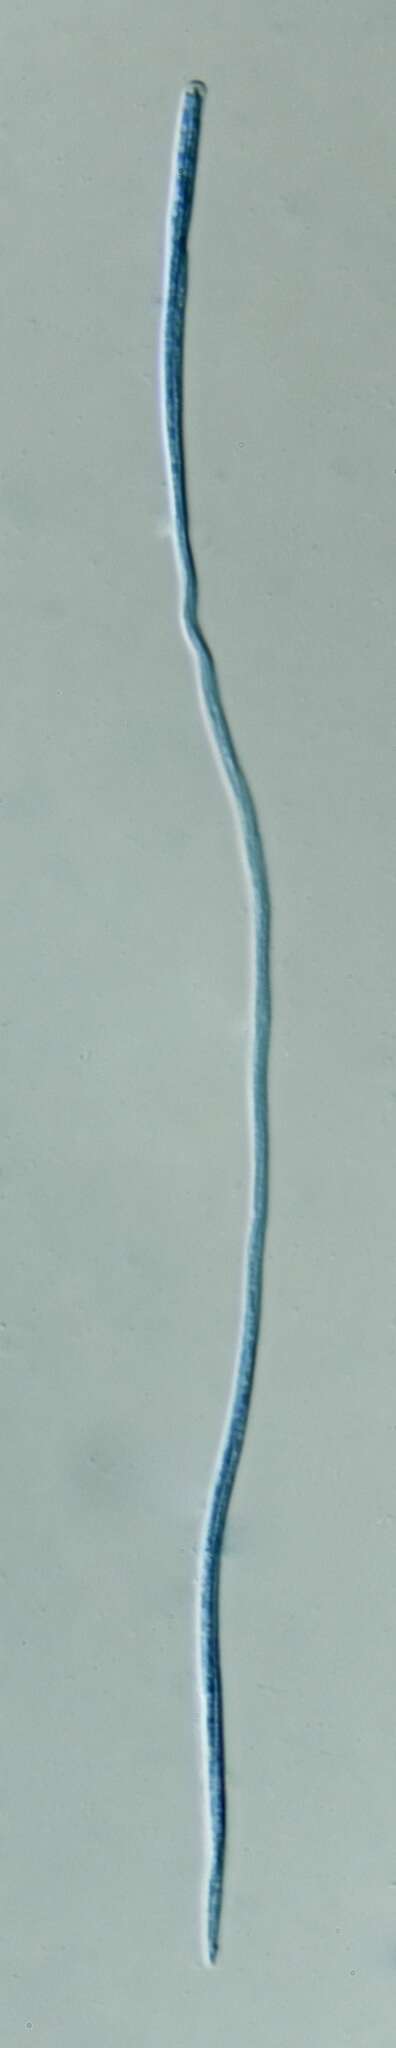 Image de Cordyceps bifusispora O. E. Erikss. 1982